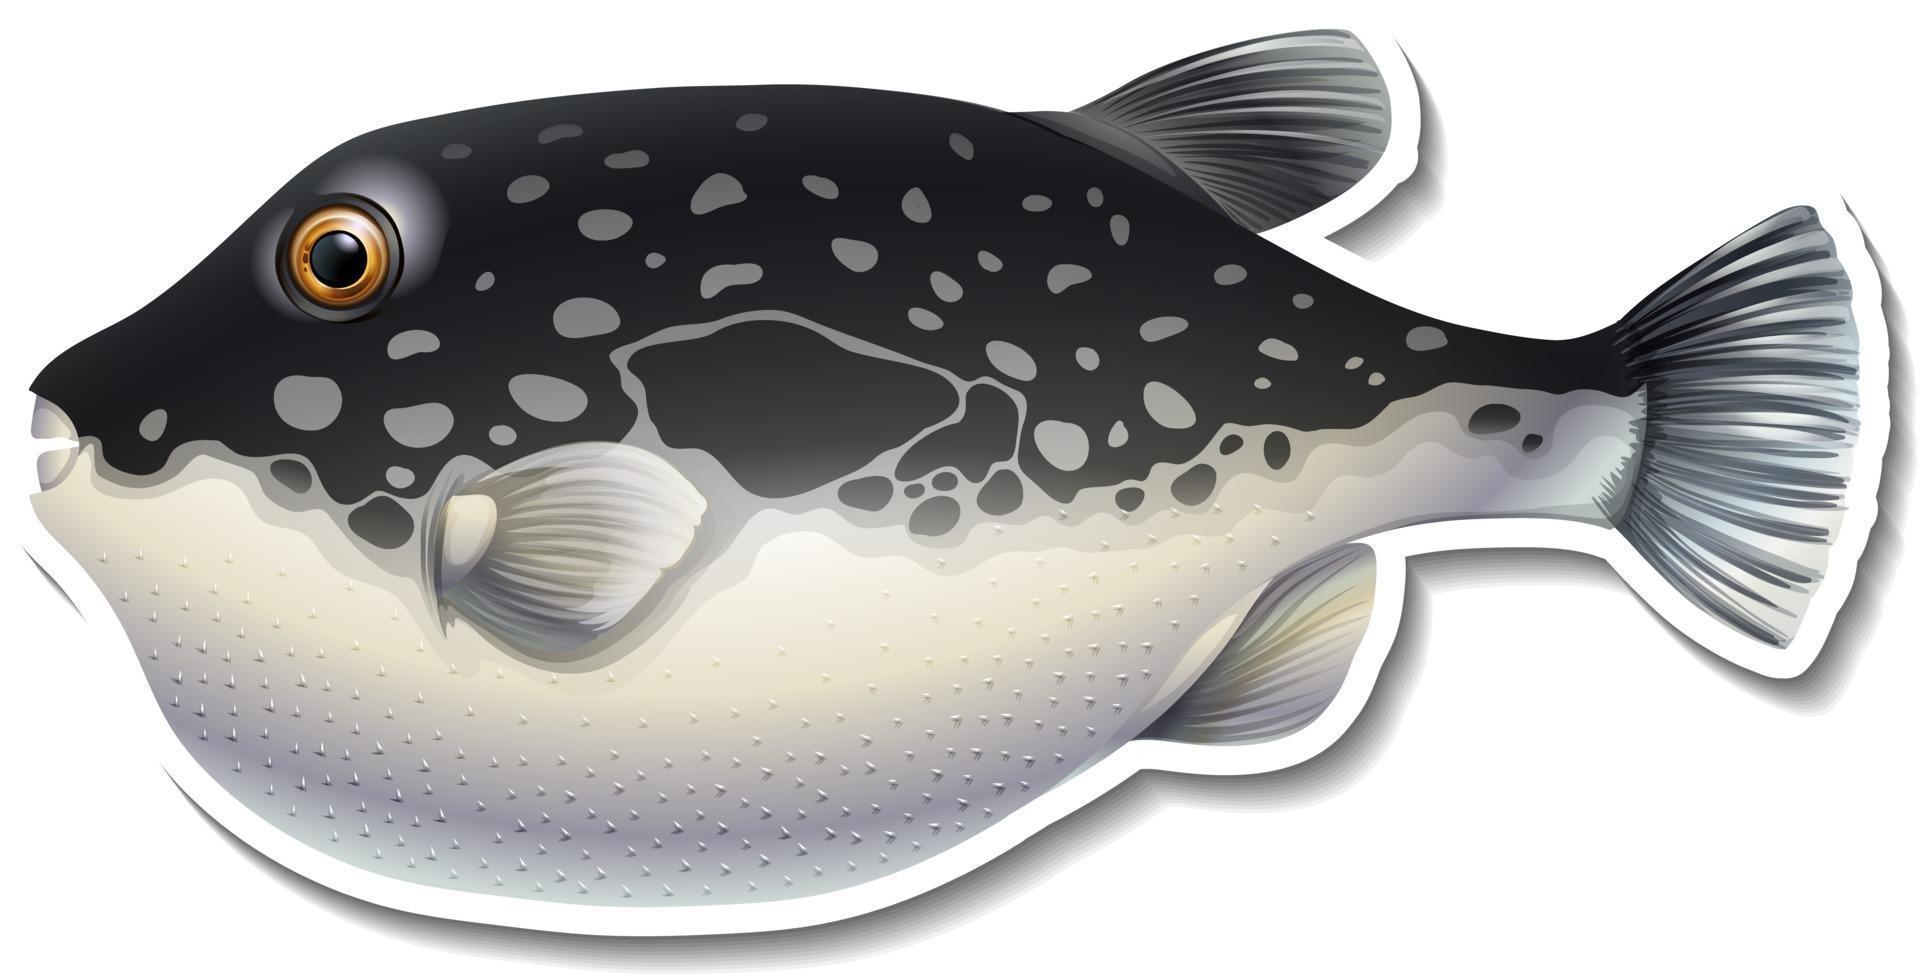 Kugelfisch-Cartoon-Aufkleber auf weißem Hintergrund vektor